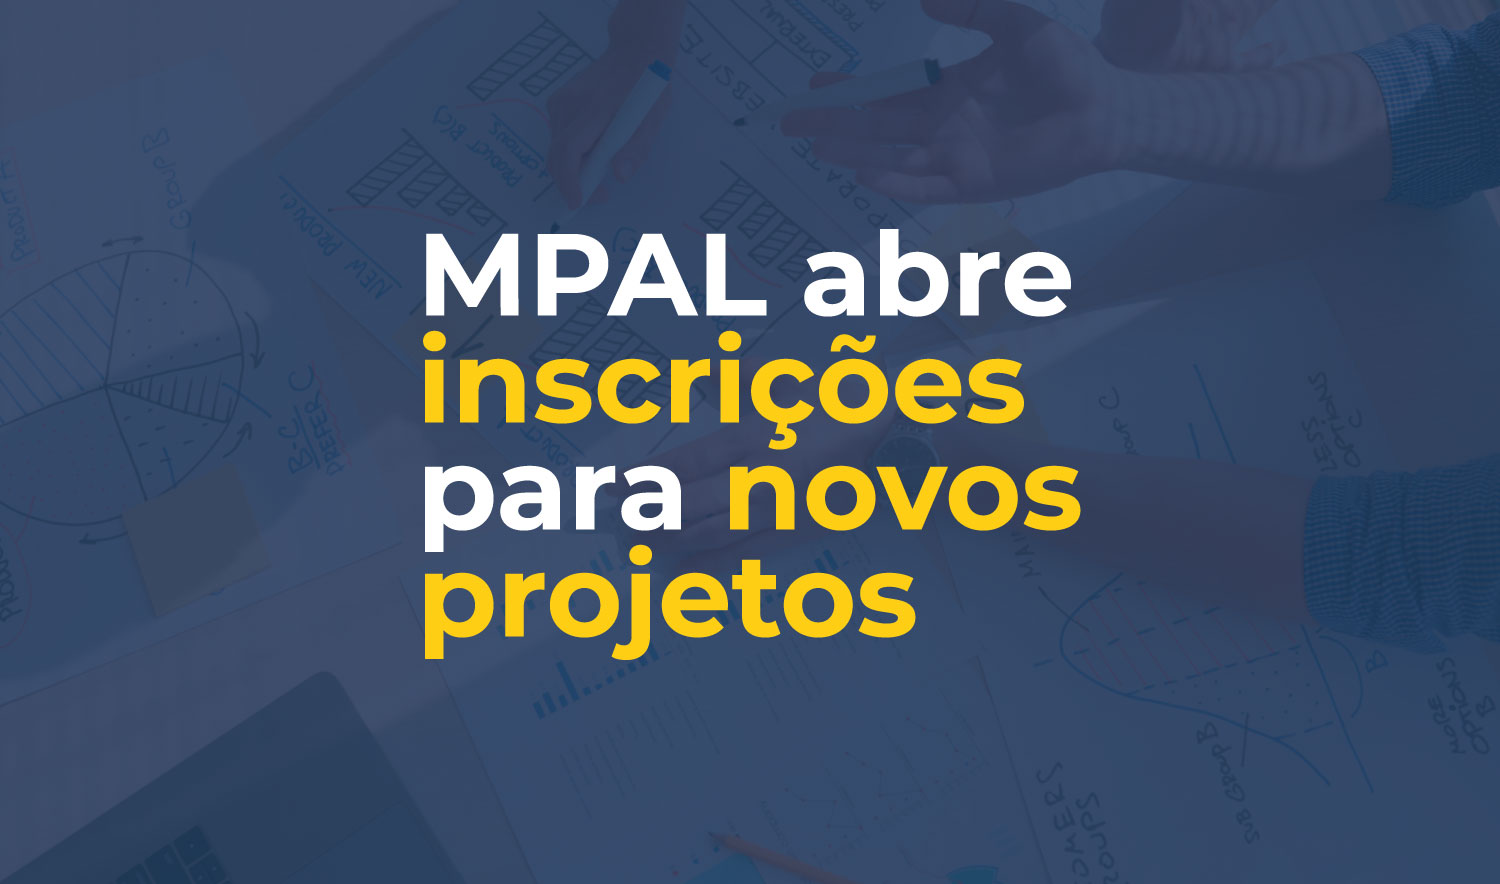 Inscrições para novos projetos do MPAL estarão abertas a partir da próxima segunda-feira